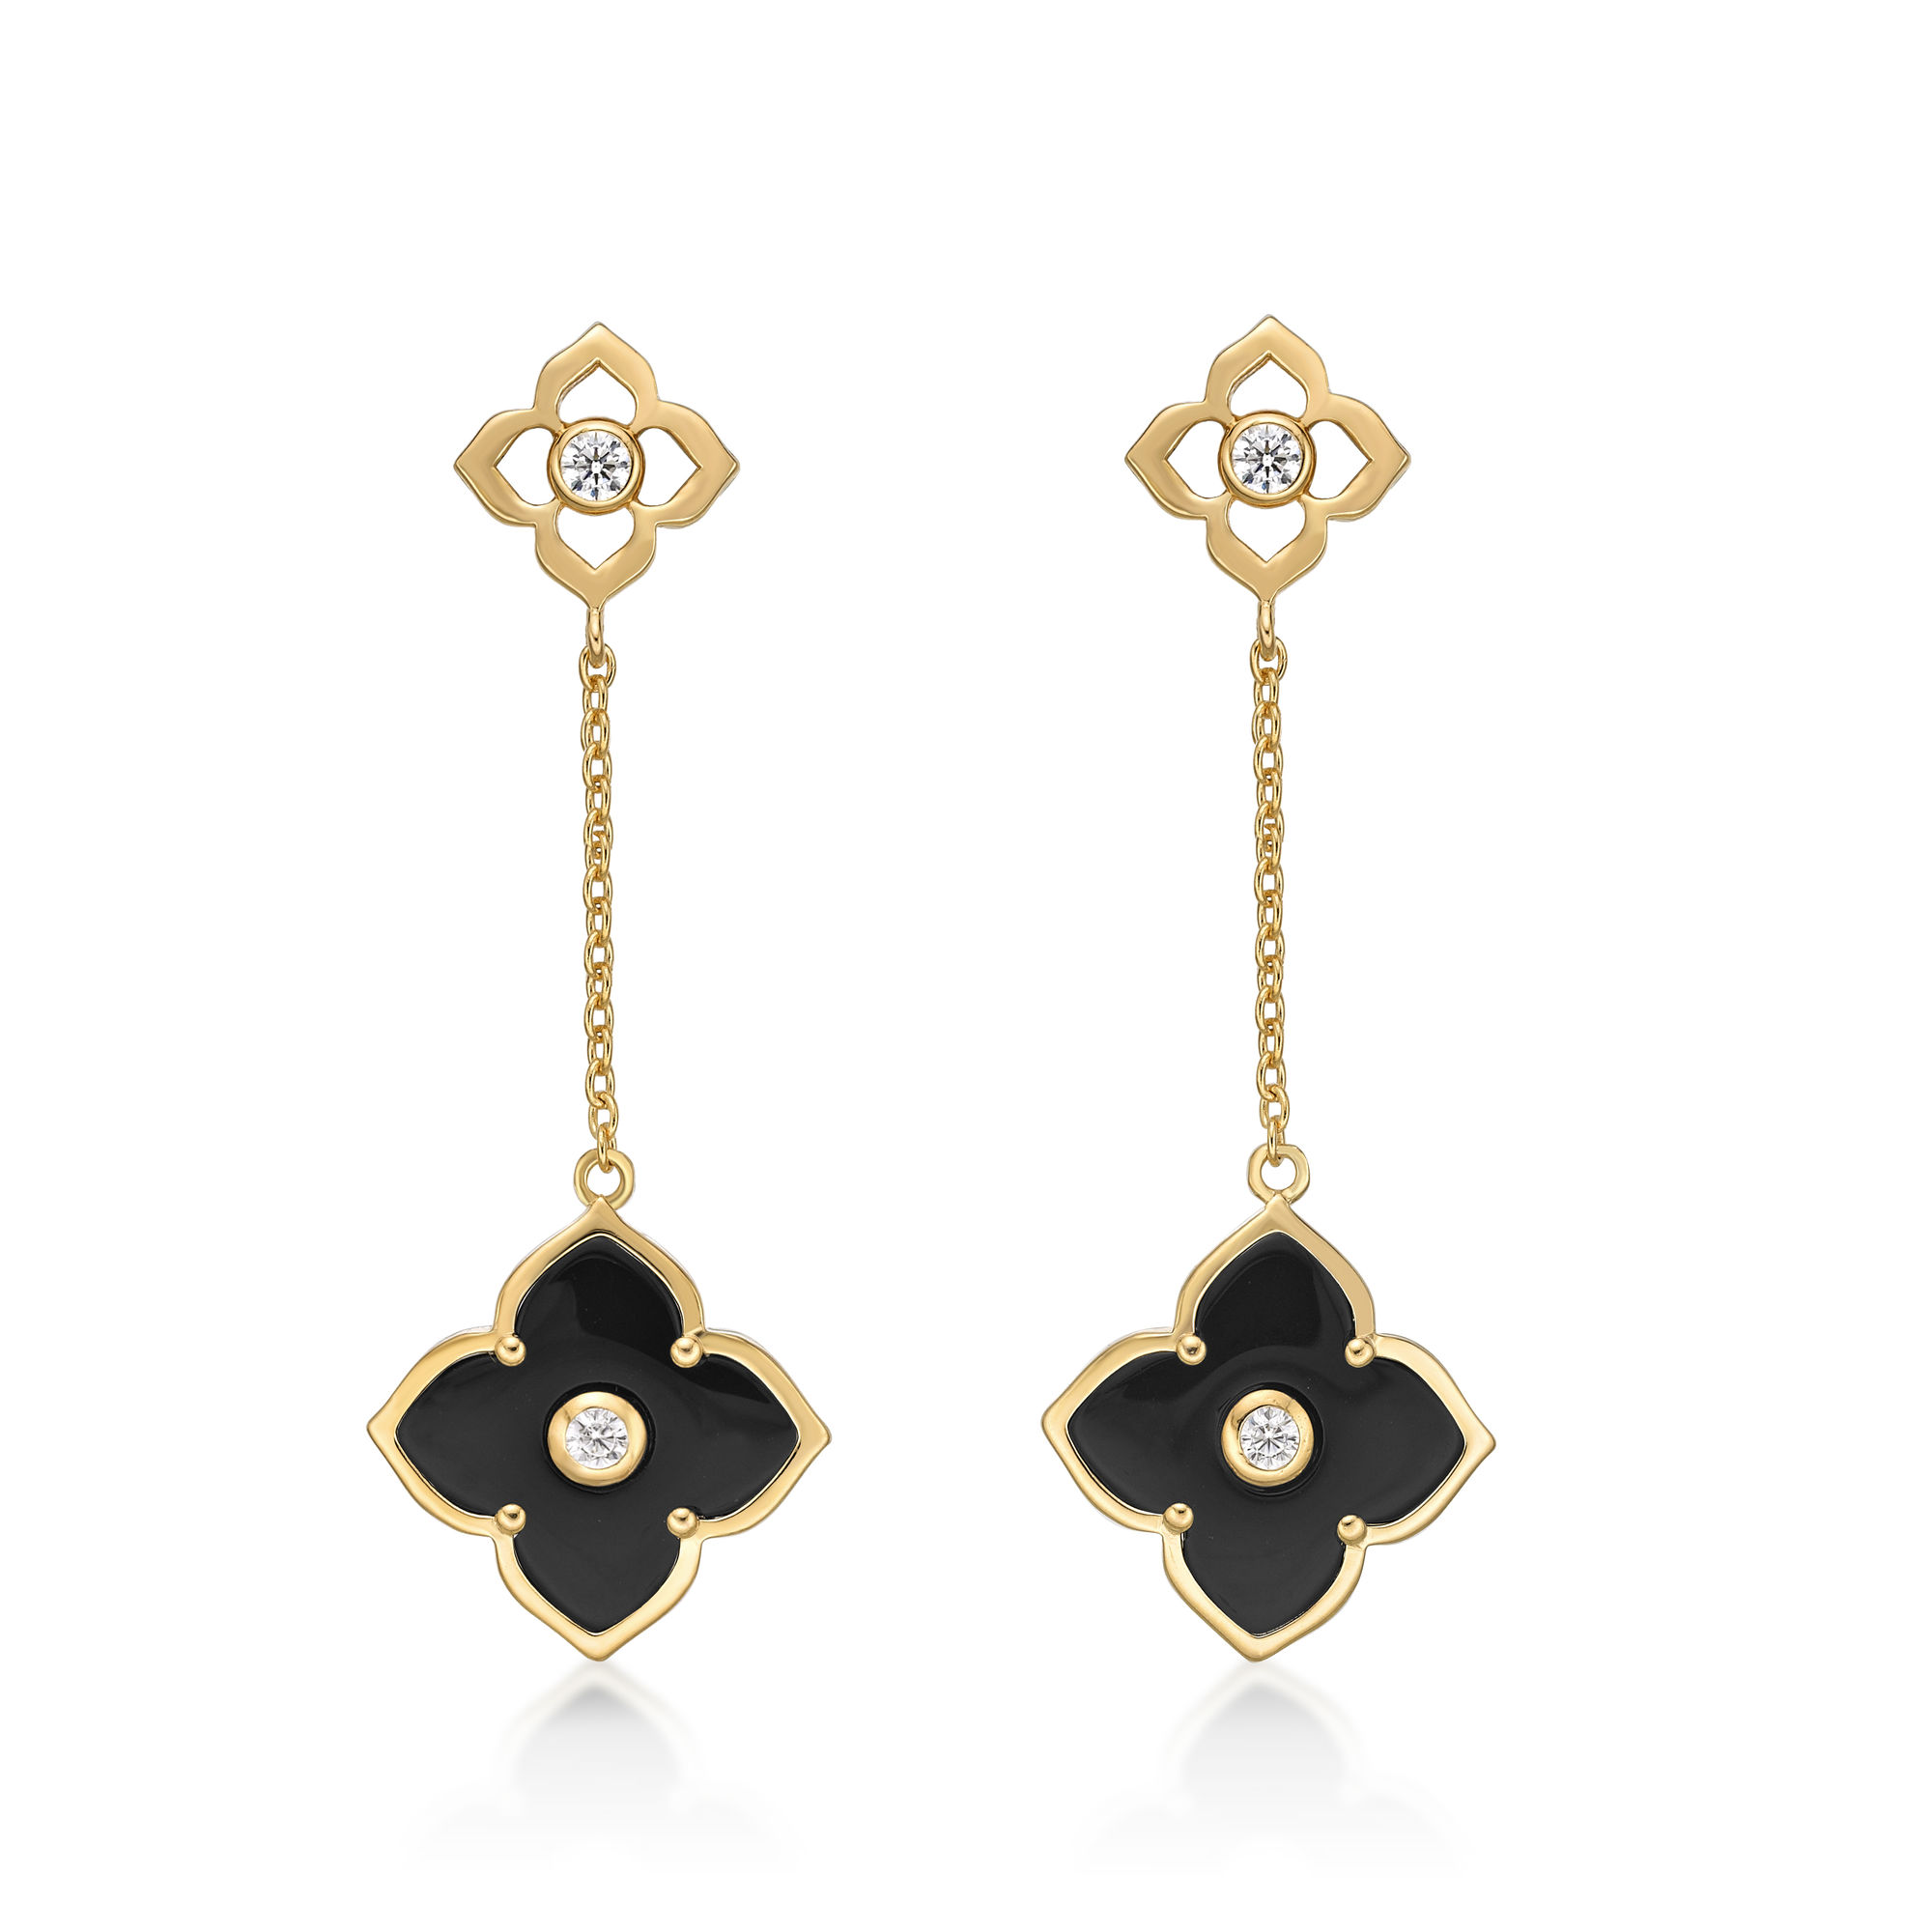 48780-earrings-fashion-jewelry-yellow-sterling-silver-48780-3.jpg